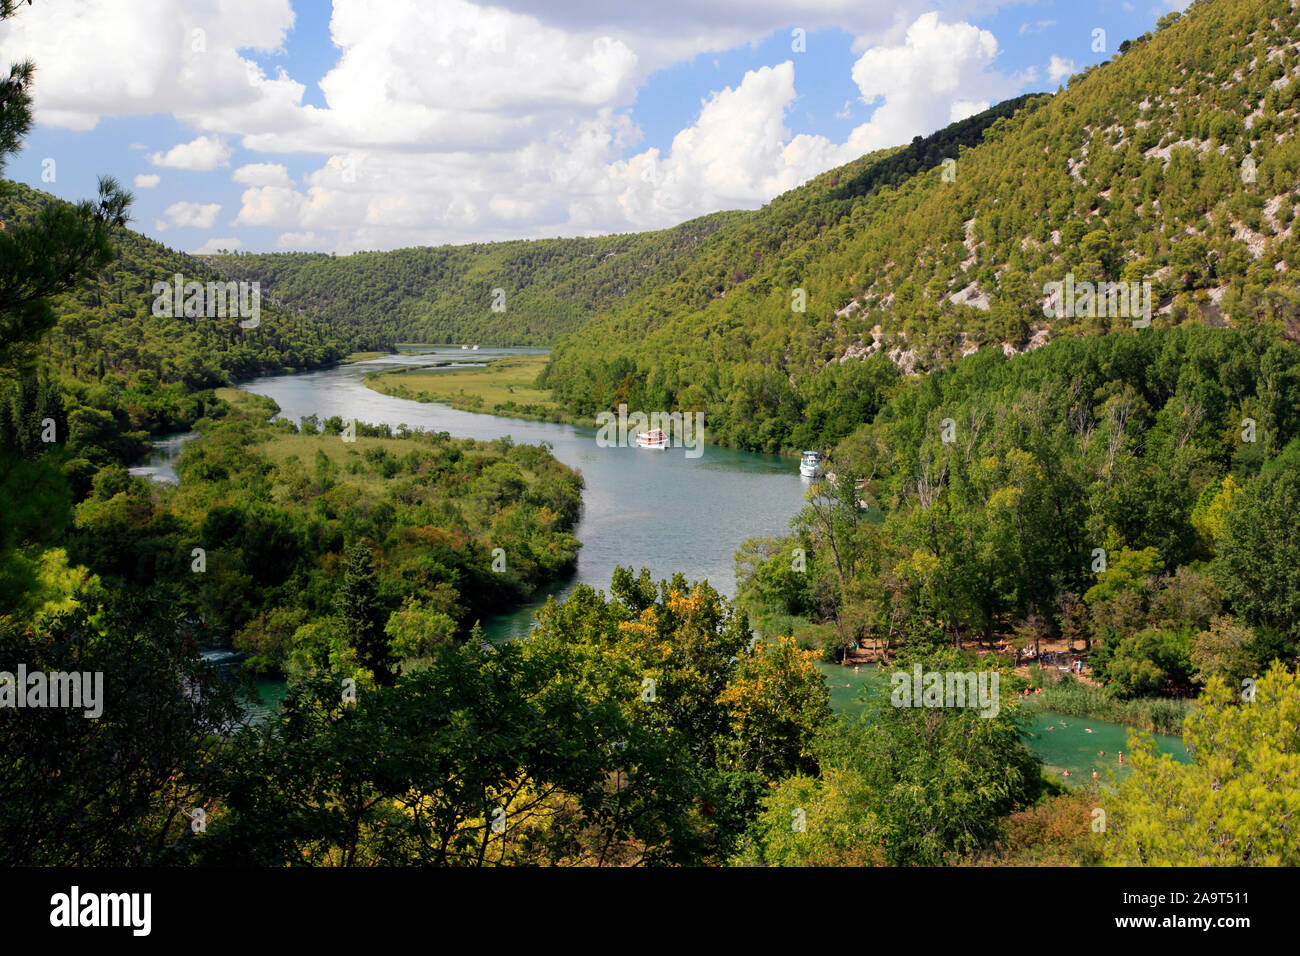 Le Parc National de Krka Skradinski buk vor, Blick auf den Fluß mit Kroatien, Ausflugsbooten Krka Banque D'Images